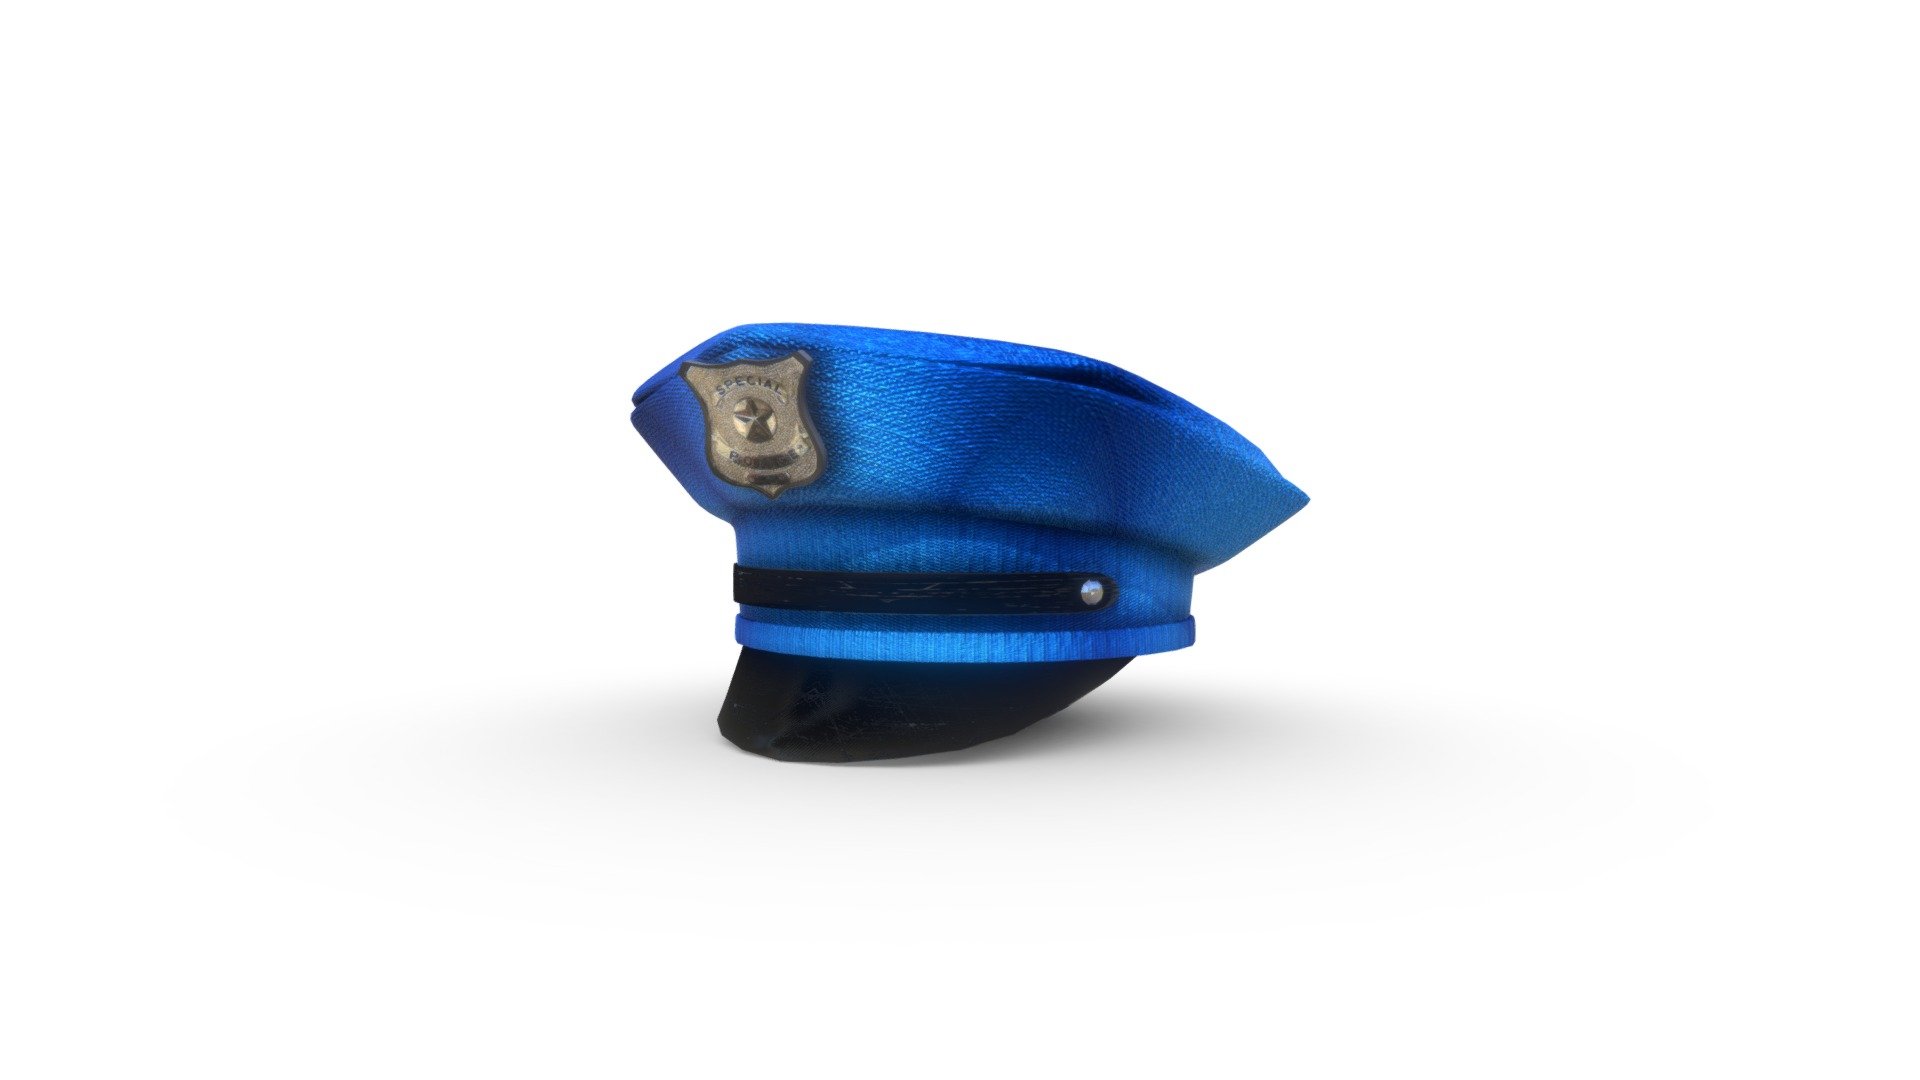 Gorra de Policía Modelo 3D